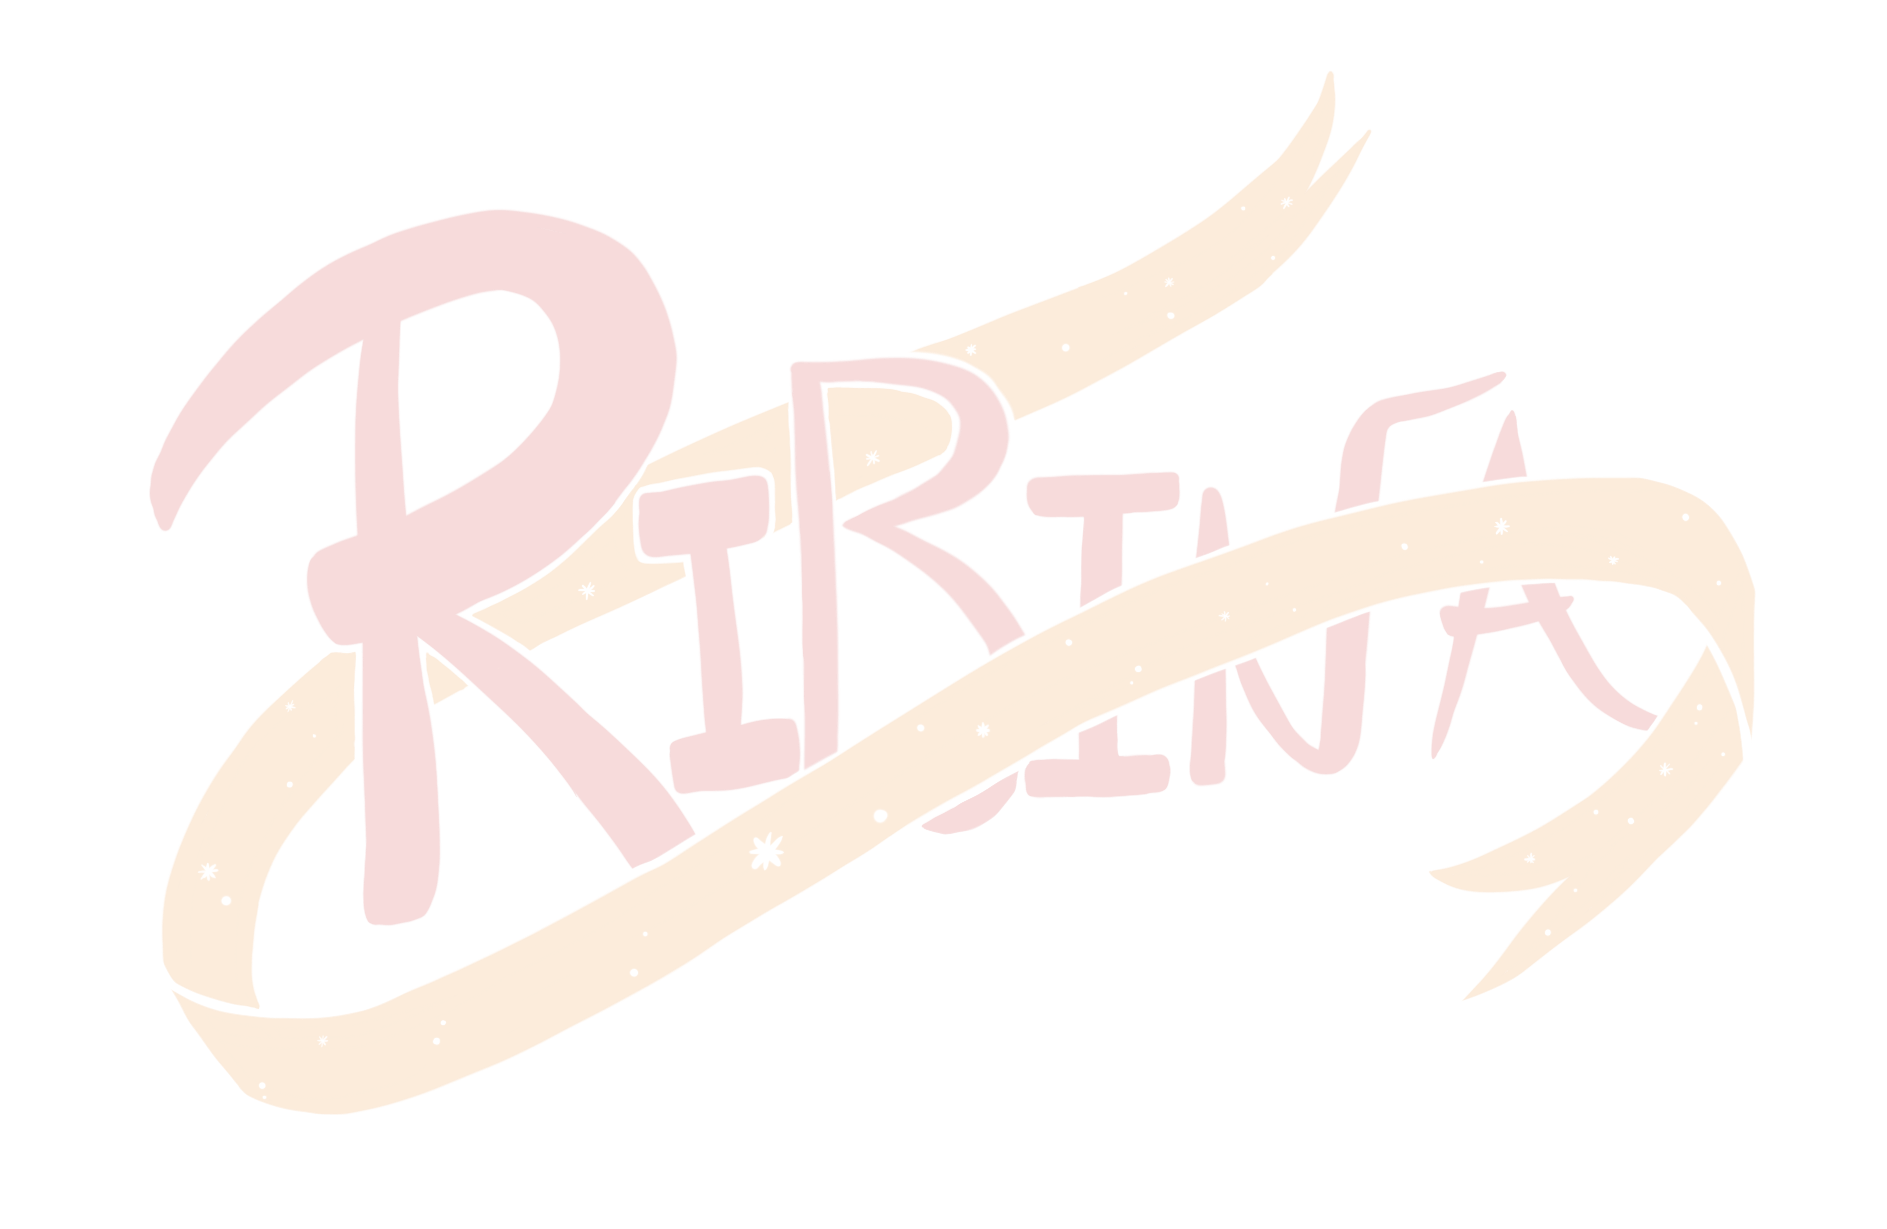 Thumbnail for Ribina-187: Hexy’s Design